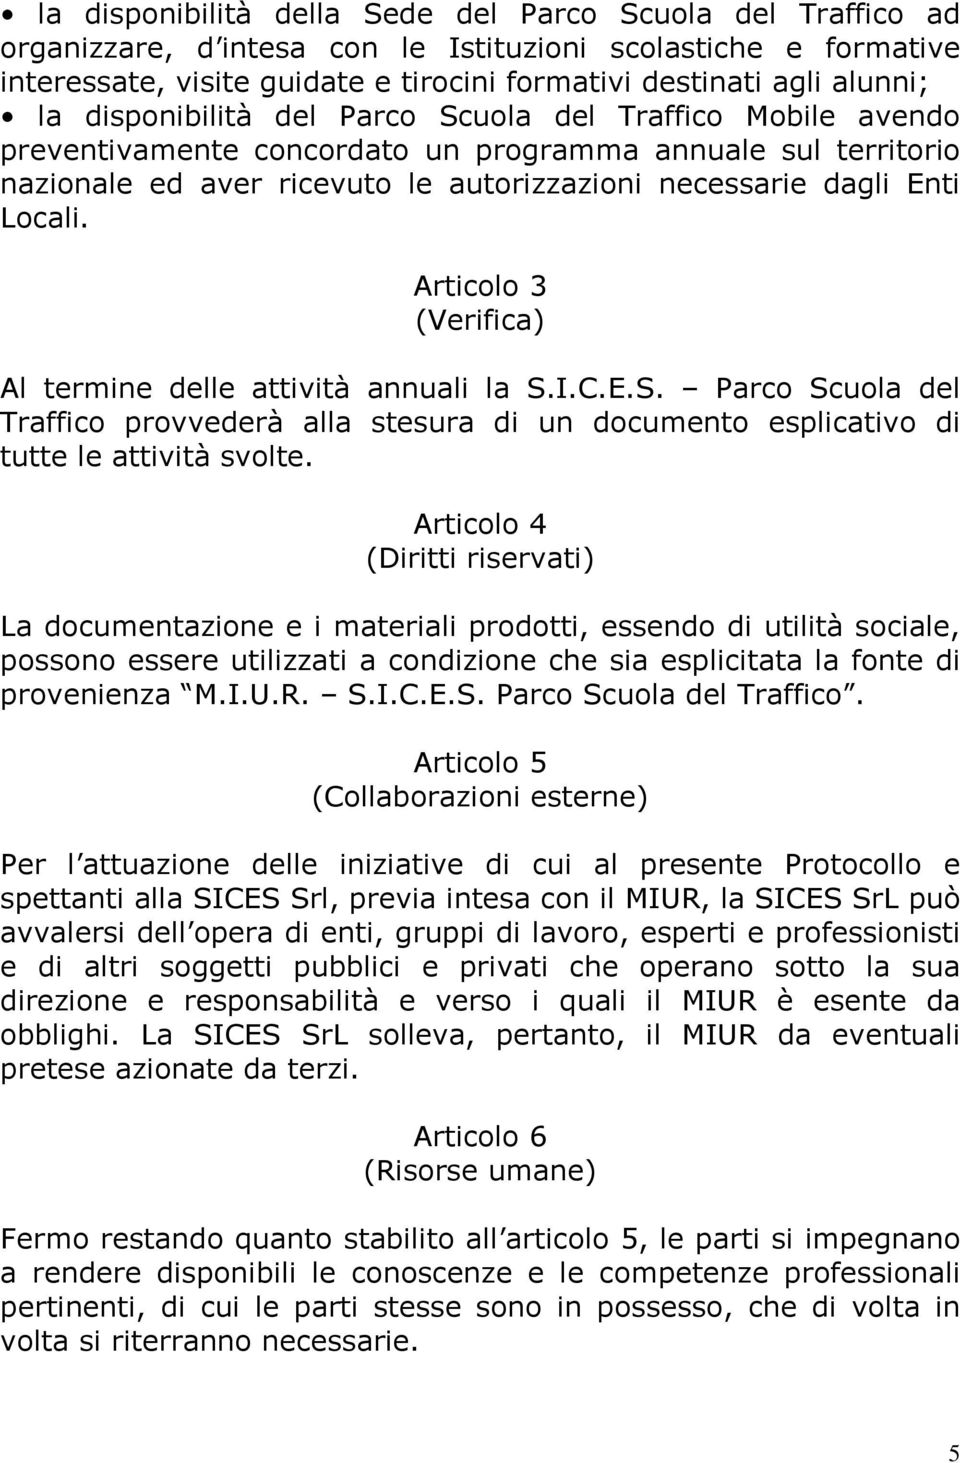 Articolo 3 (Verifica) Al termine delle attività annuali la S.I.C.E.S. Parco Scuola del Traffico provvederà alla stesura di un documento esplicativo di tutte le attività svolte.